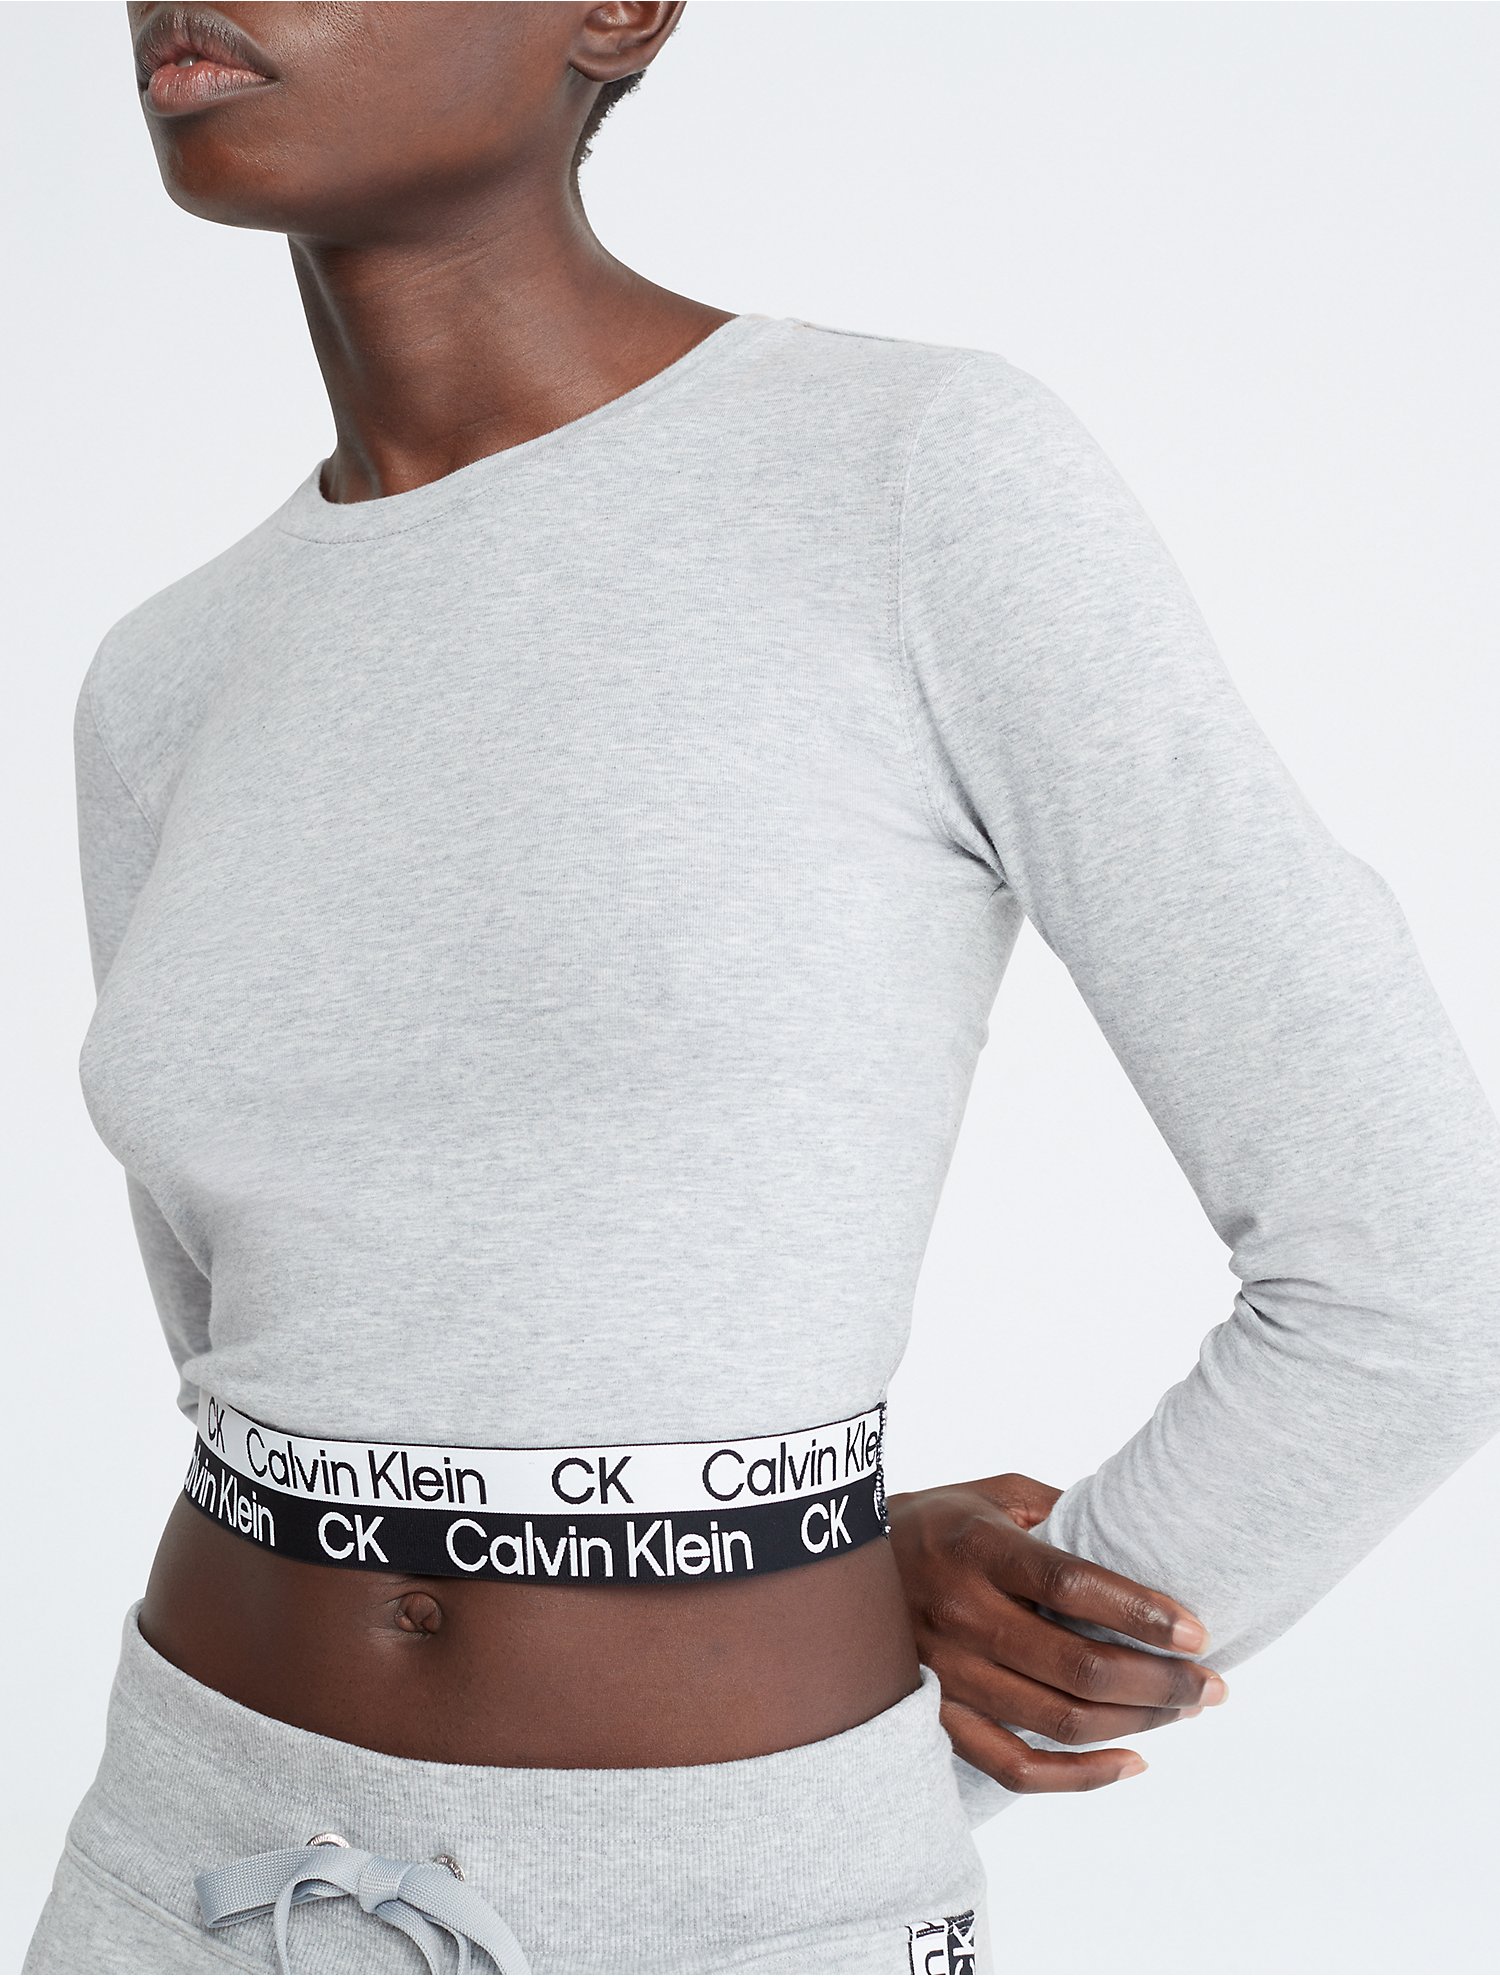 marge martelen Munching Performance Logo Tape Cropped T-Shirt | Calvin Klein